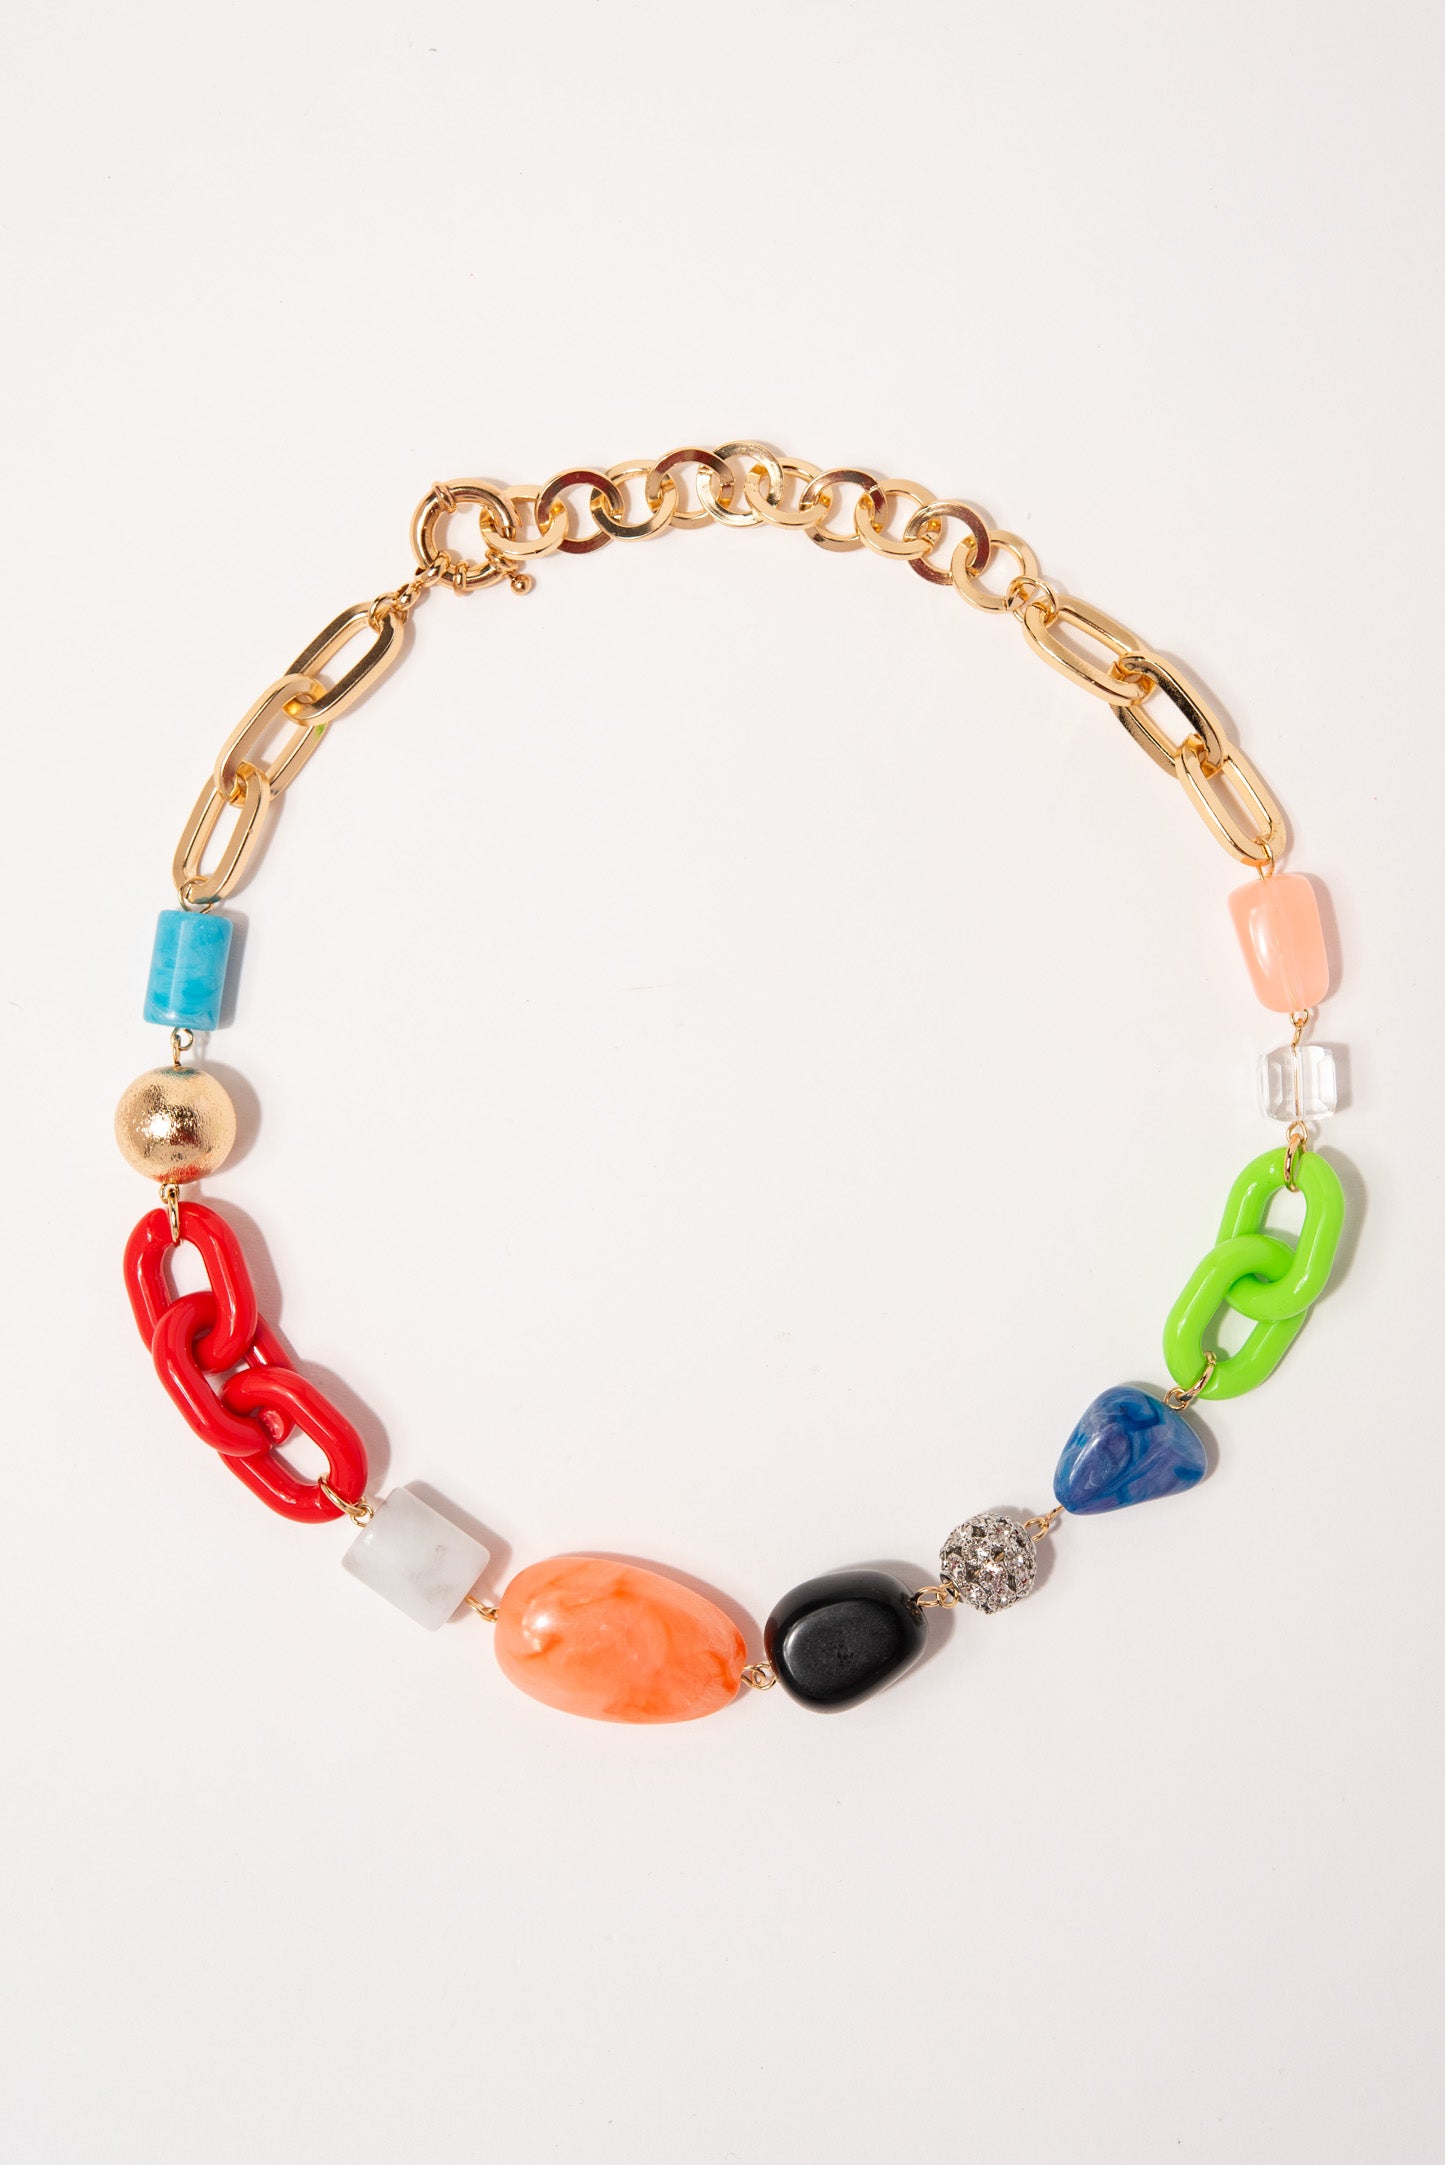 Stella Bohemian Multi Stone Chain Link Necklace - Multi Color